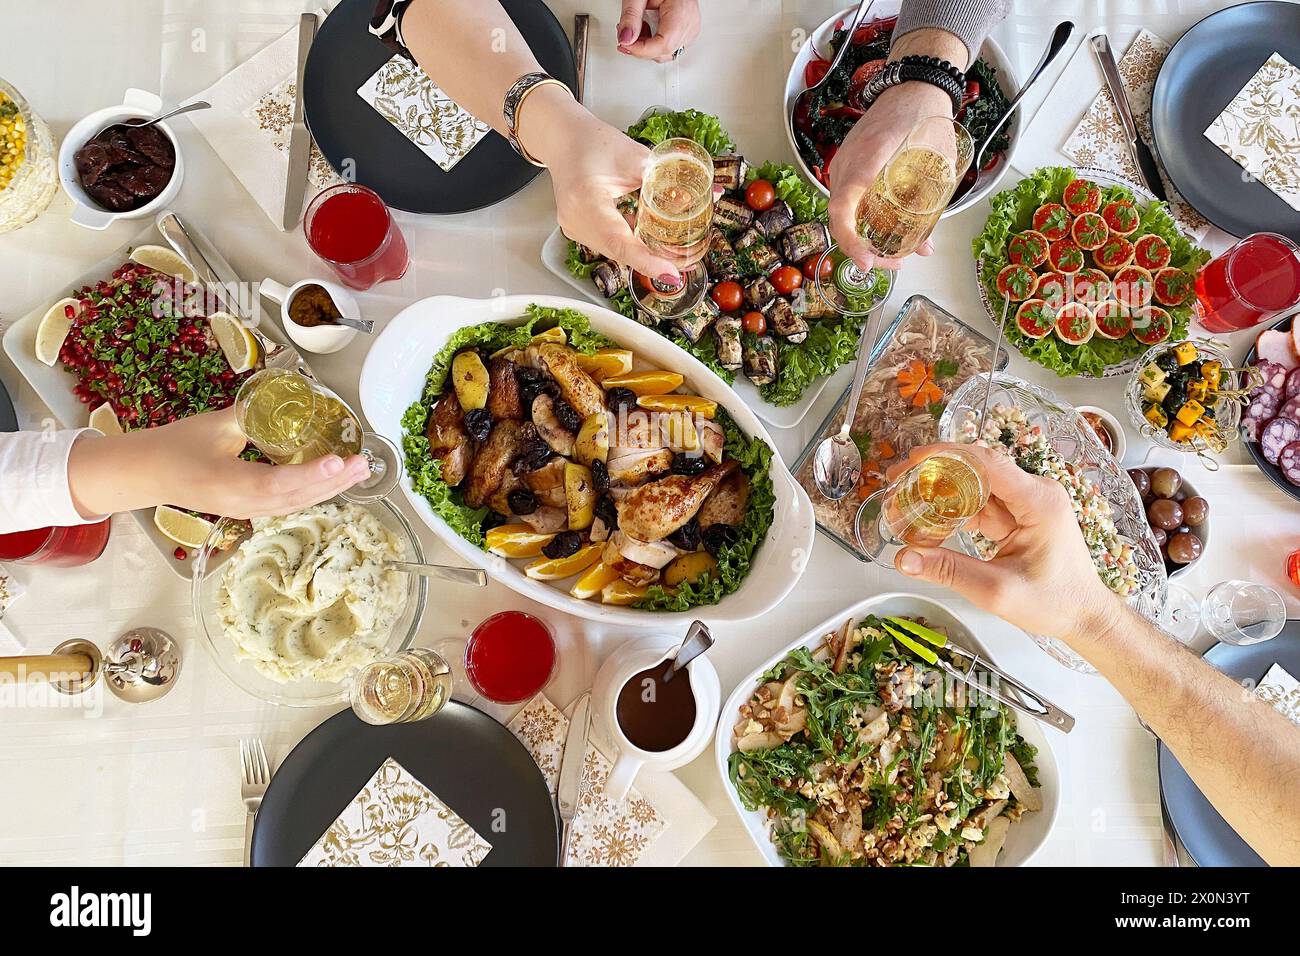 Tisch voller köstlicher Speisen auf Tellern, Blick von oben. Gebackenes Hühnchen mit Kartoffeln, Kaviar in Tartlets, Salate, verschiedene Snacks und Getränke bei einem Galadinner Stockfoto